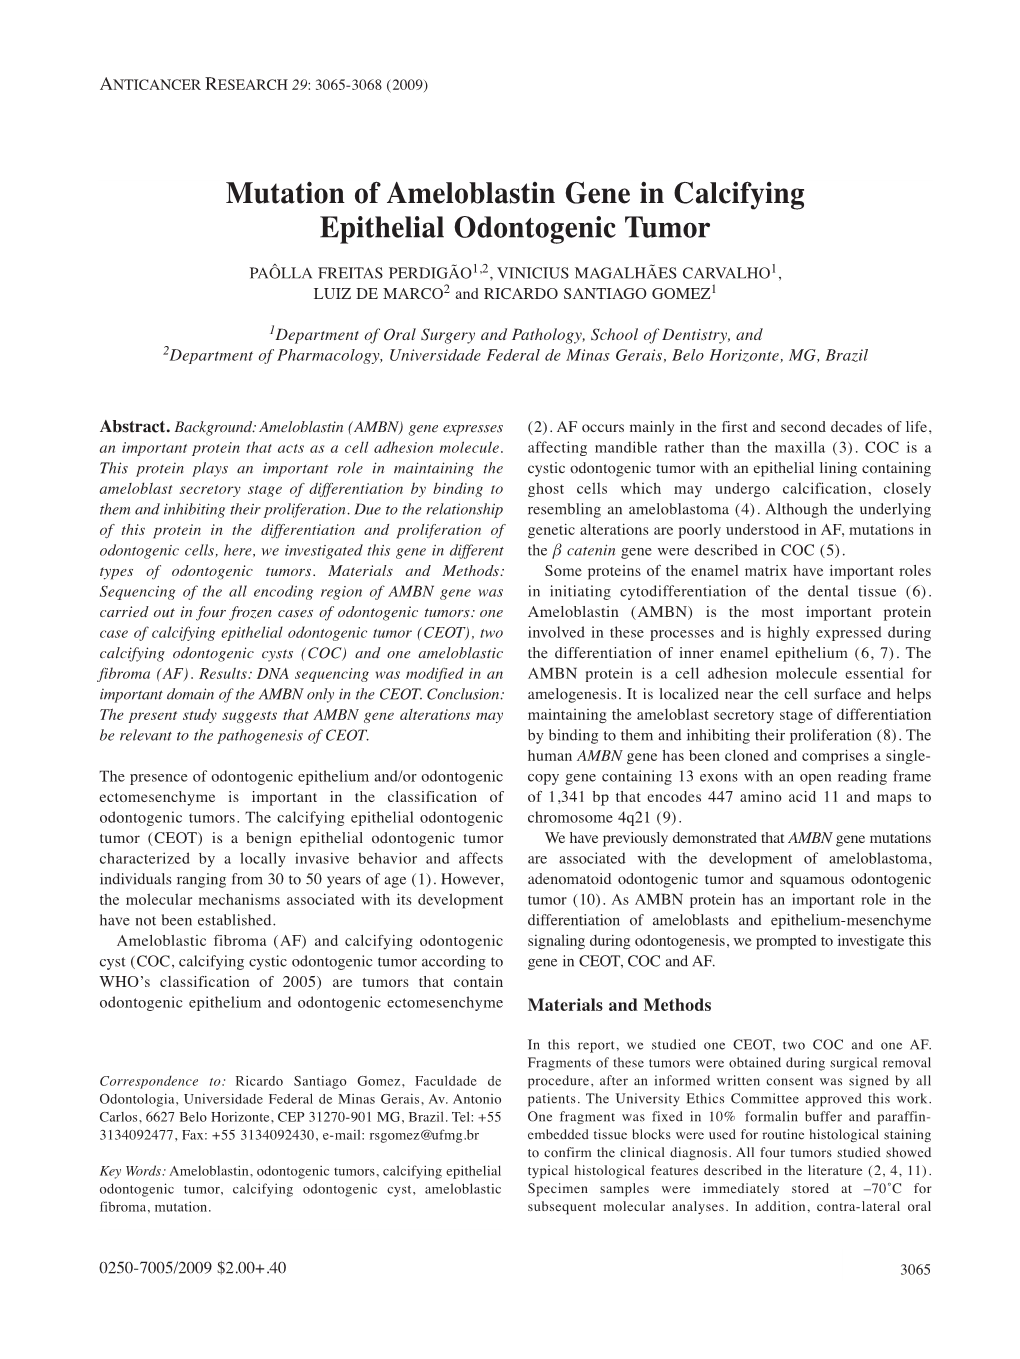 Mutation of Ameloblastin Gene in Calcifying Epithelial Odontogenic Tumor